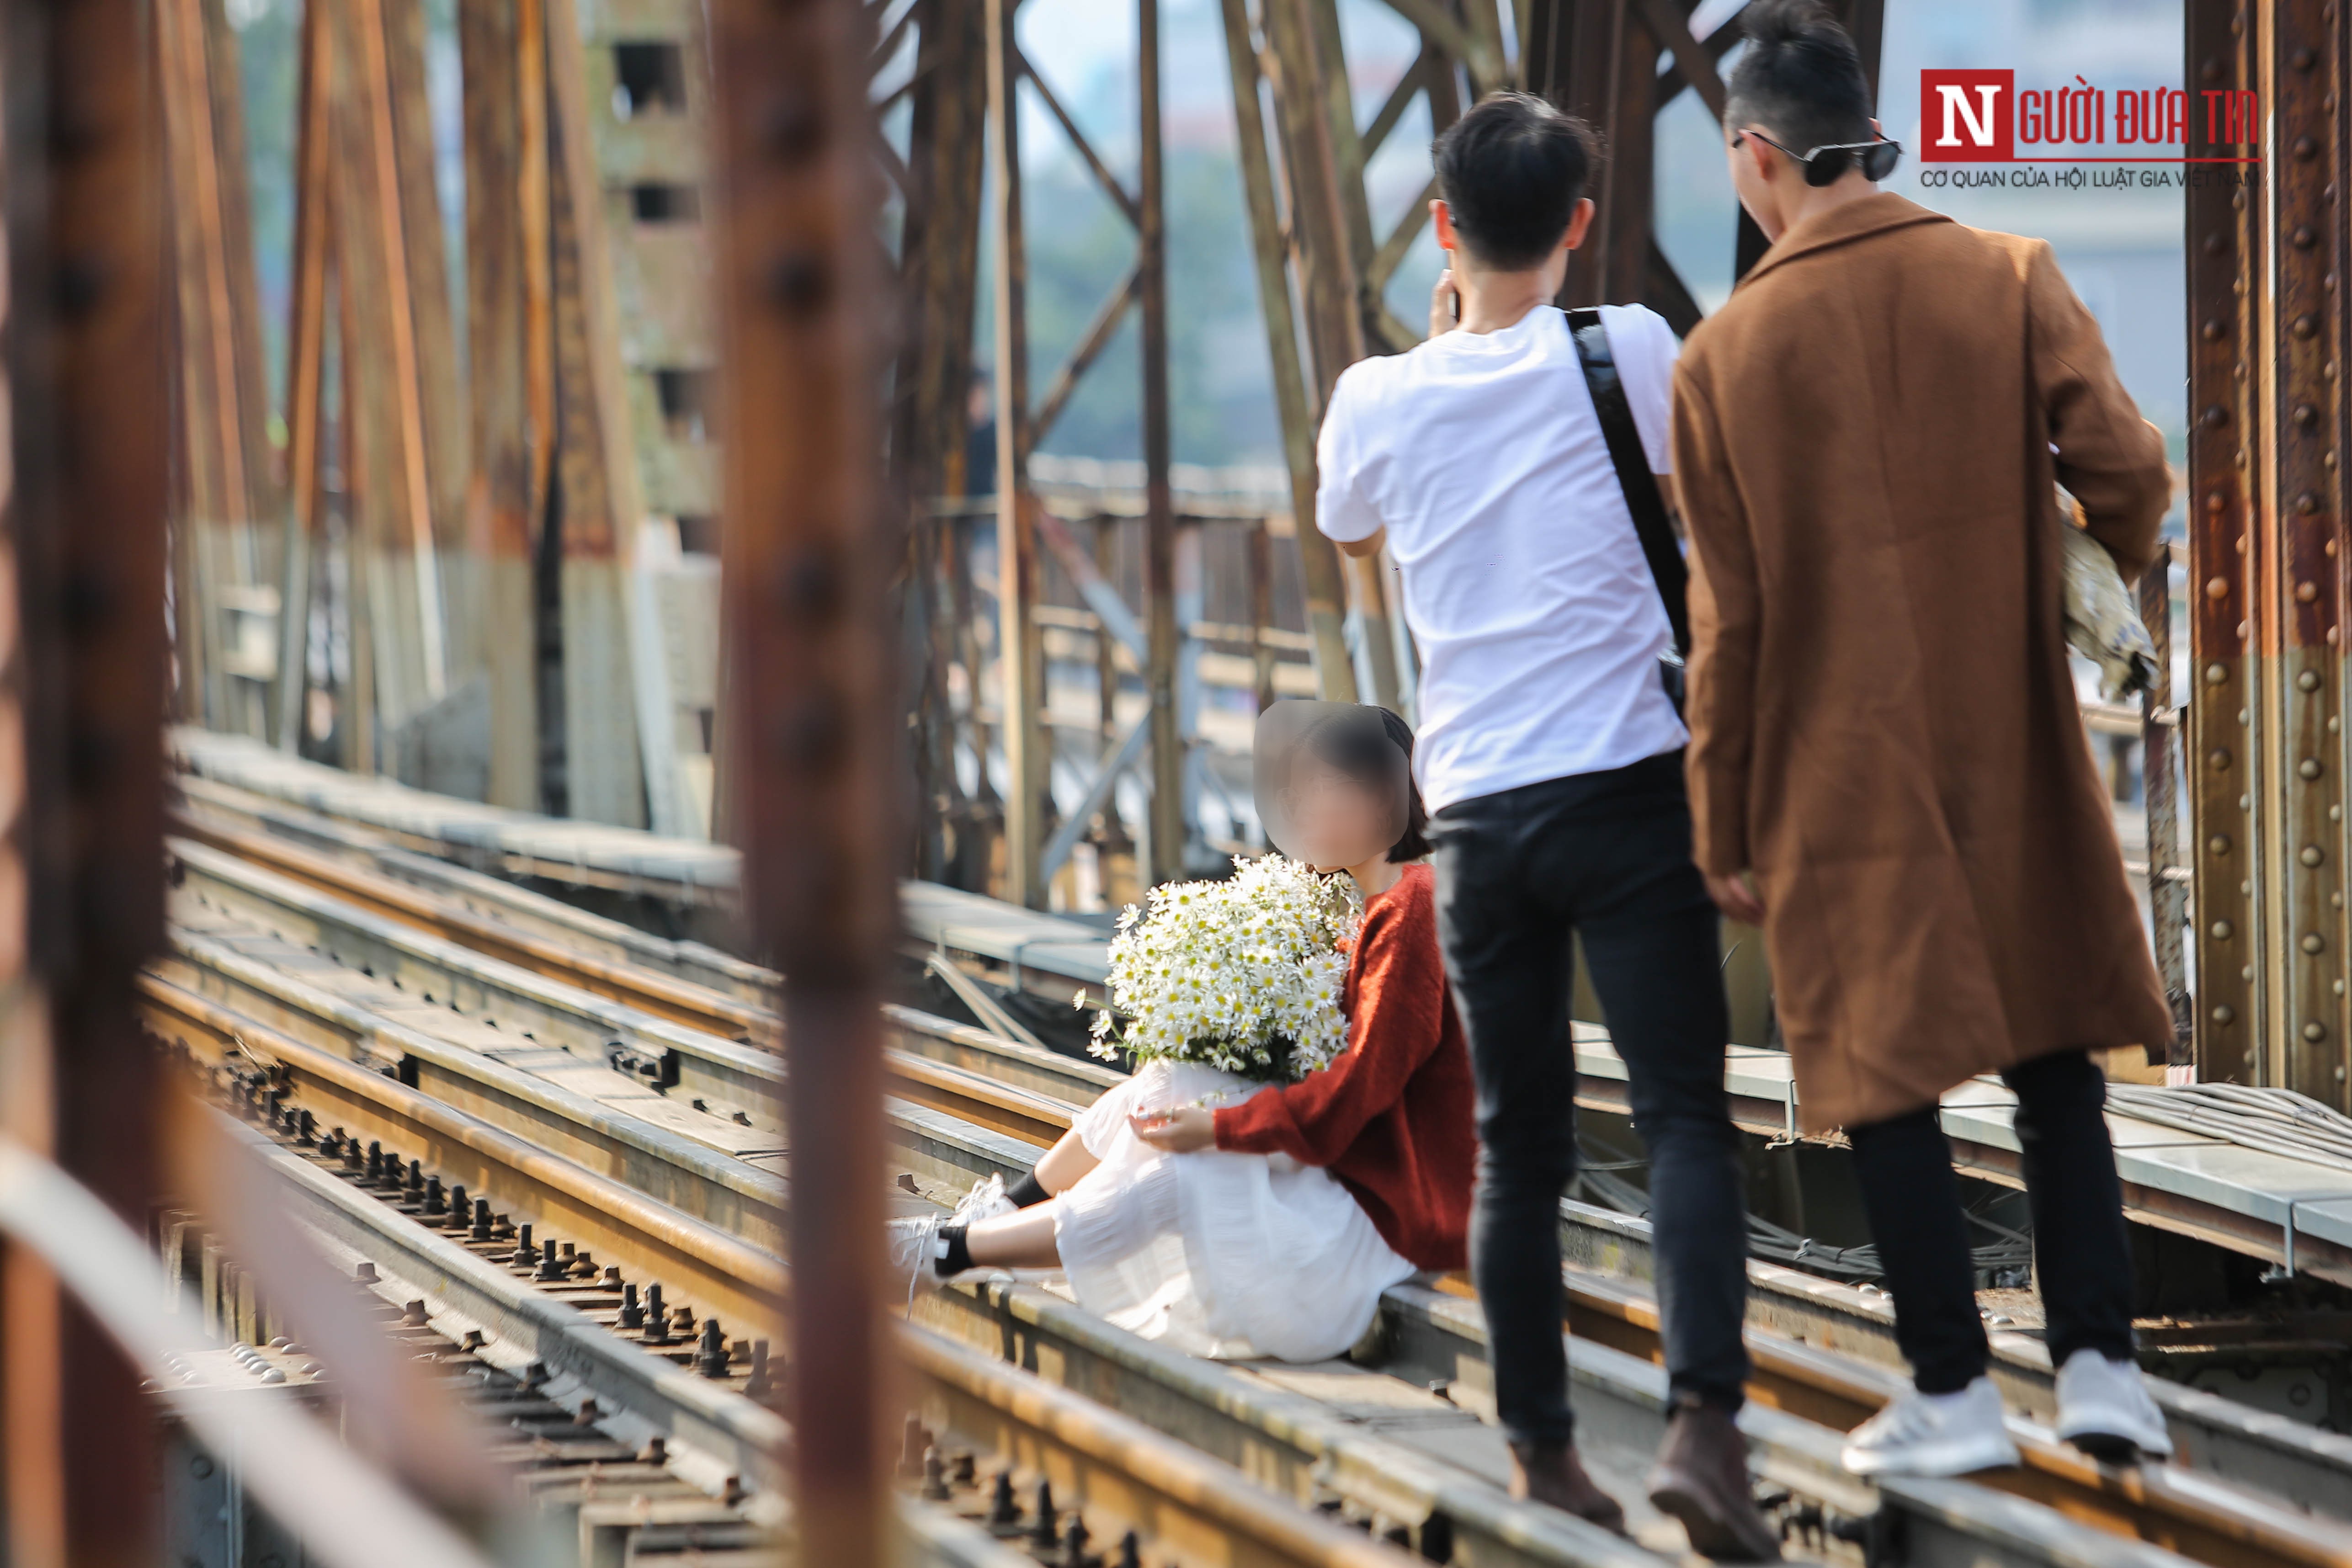 Tin nhanh - Bất chấp nguy hiểm, giới trẻ trèo sang đường tàu trên cầu Long Biên check in (Hình 9).